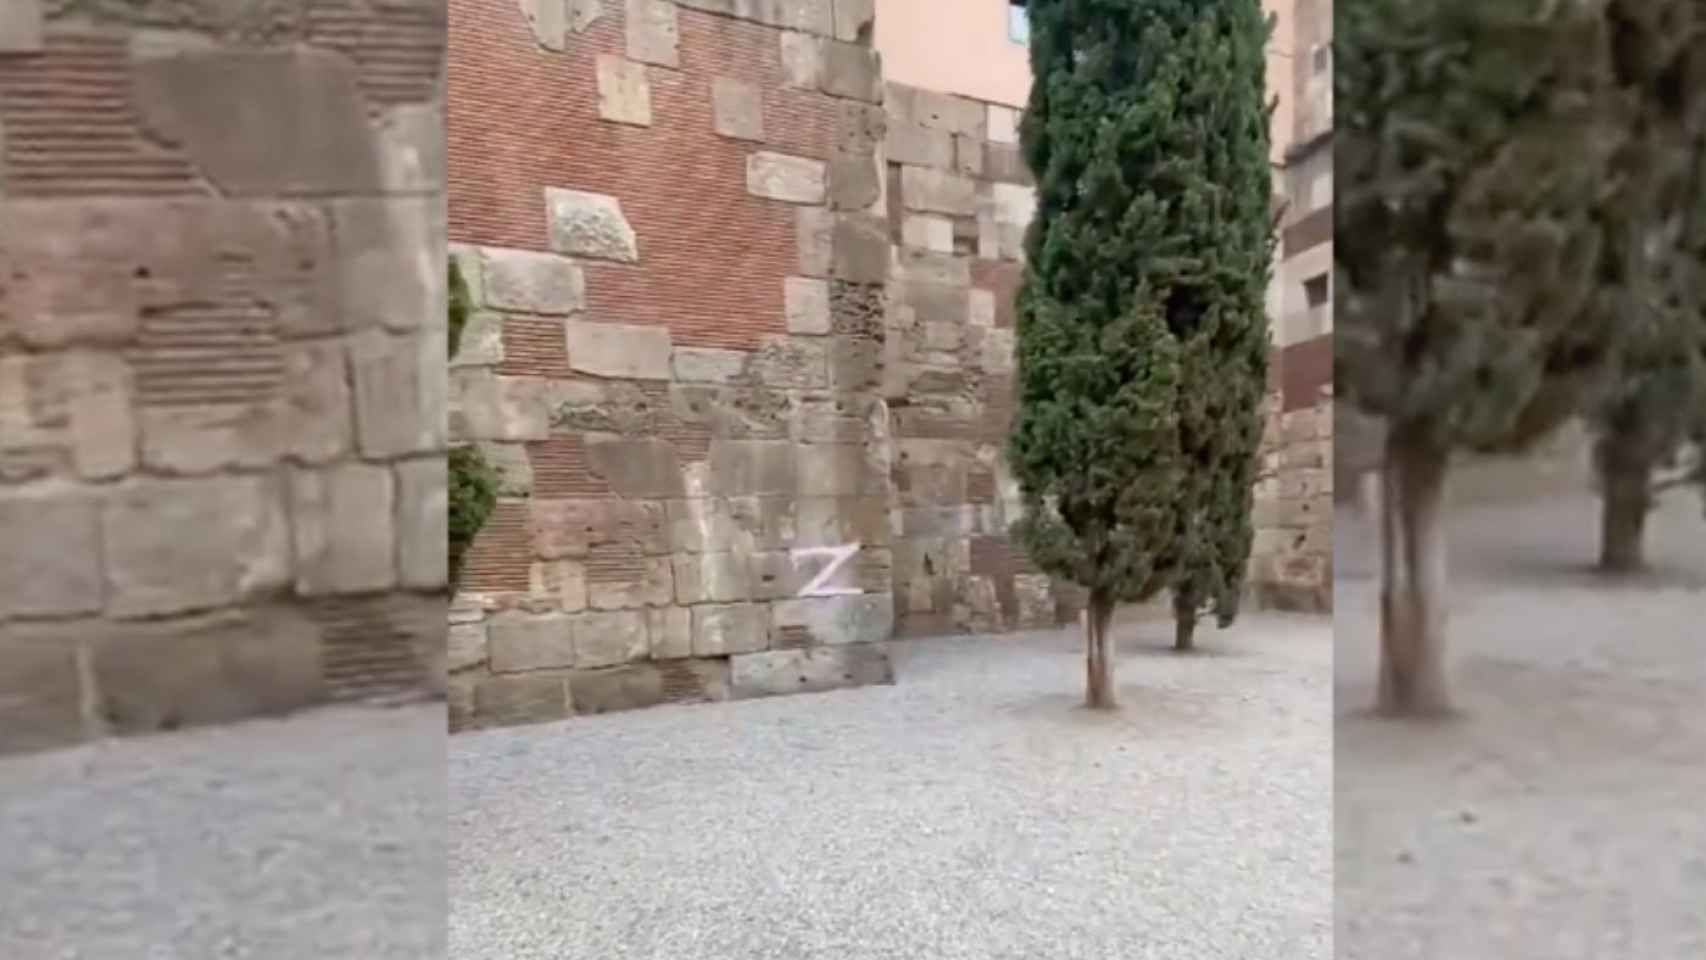 El símbolo prorruso 'Z' en la antigua muralla romana de Barcelona / CEDIDA